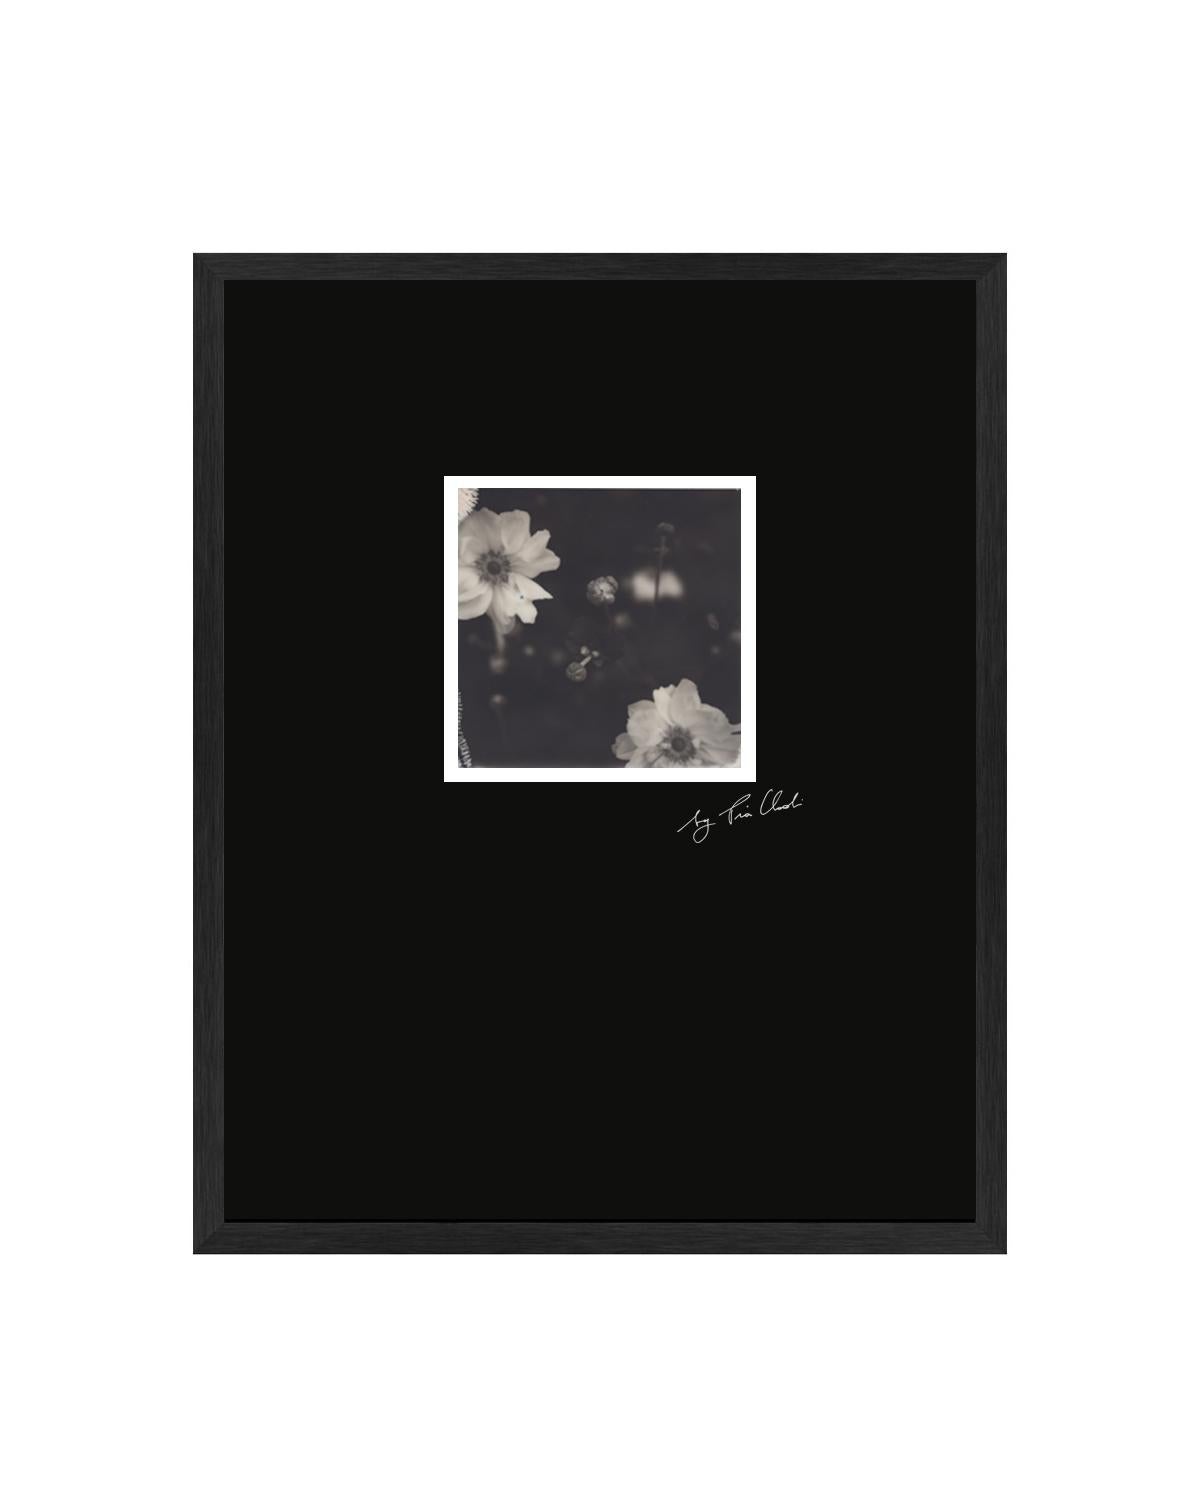 Fleur Du Mal - Photographie Polaroid originale en noir et blanc de Pia Clodi encadrée

À l'instar de nombreuses œuvres de Pia Clodi, Fleur Du Mal est une célébration du processus analogique. Pris sur Polaroid, le fini quelque peu sépia de cette